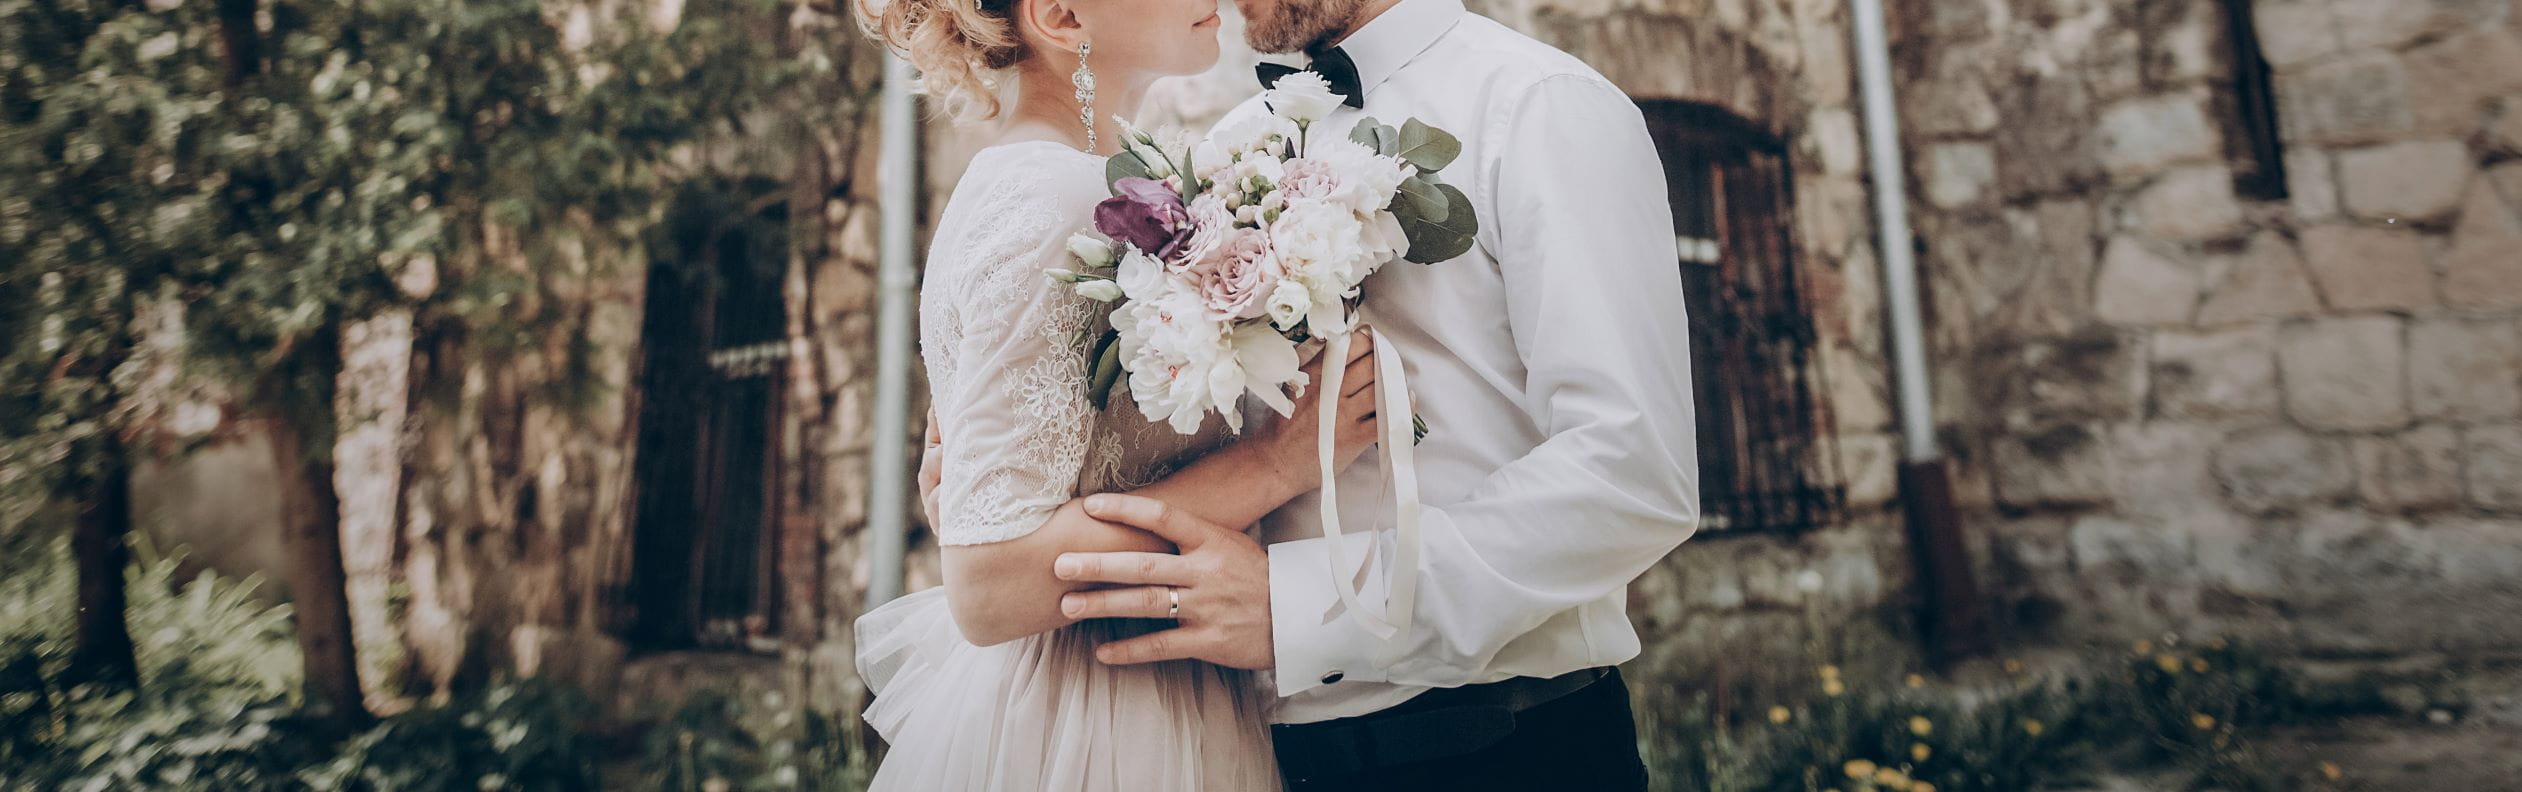 Kredyt na wesele - jak poradzić sobie ze ślubnymi wydatkami?